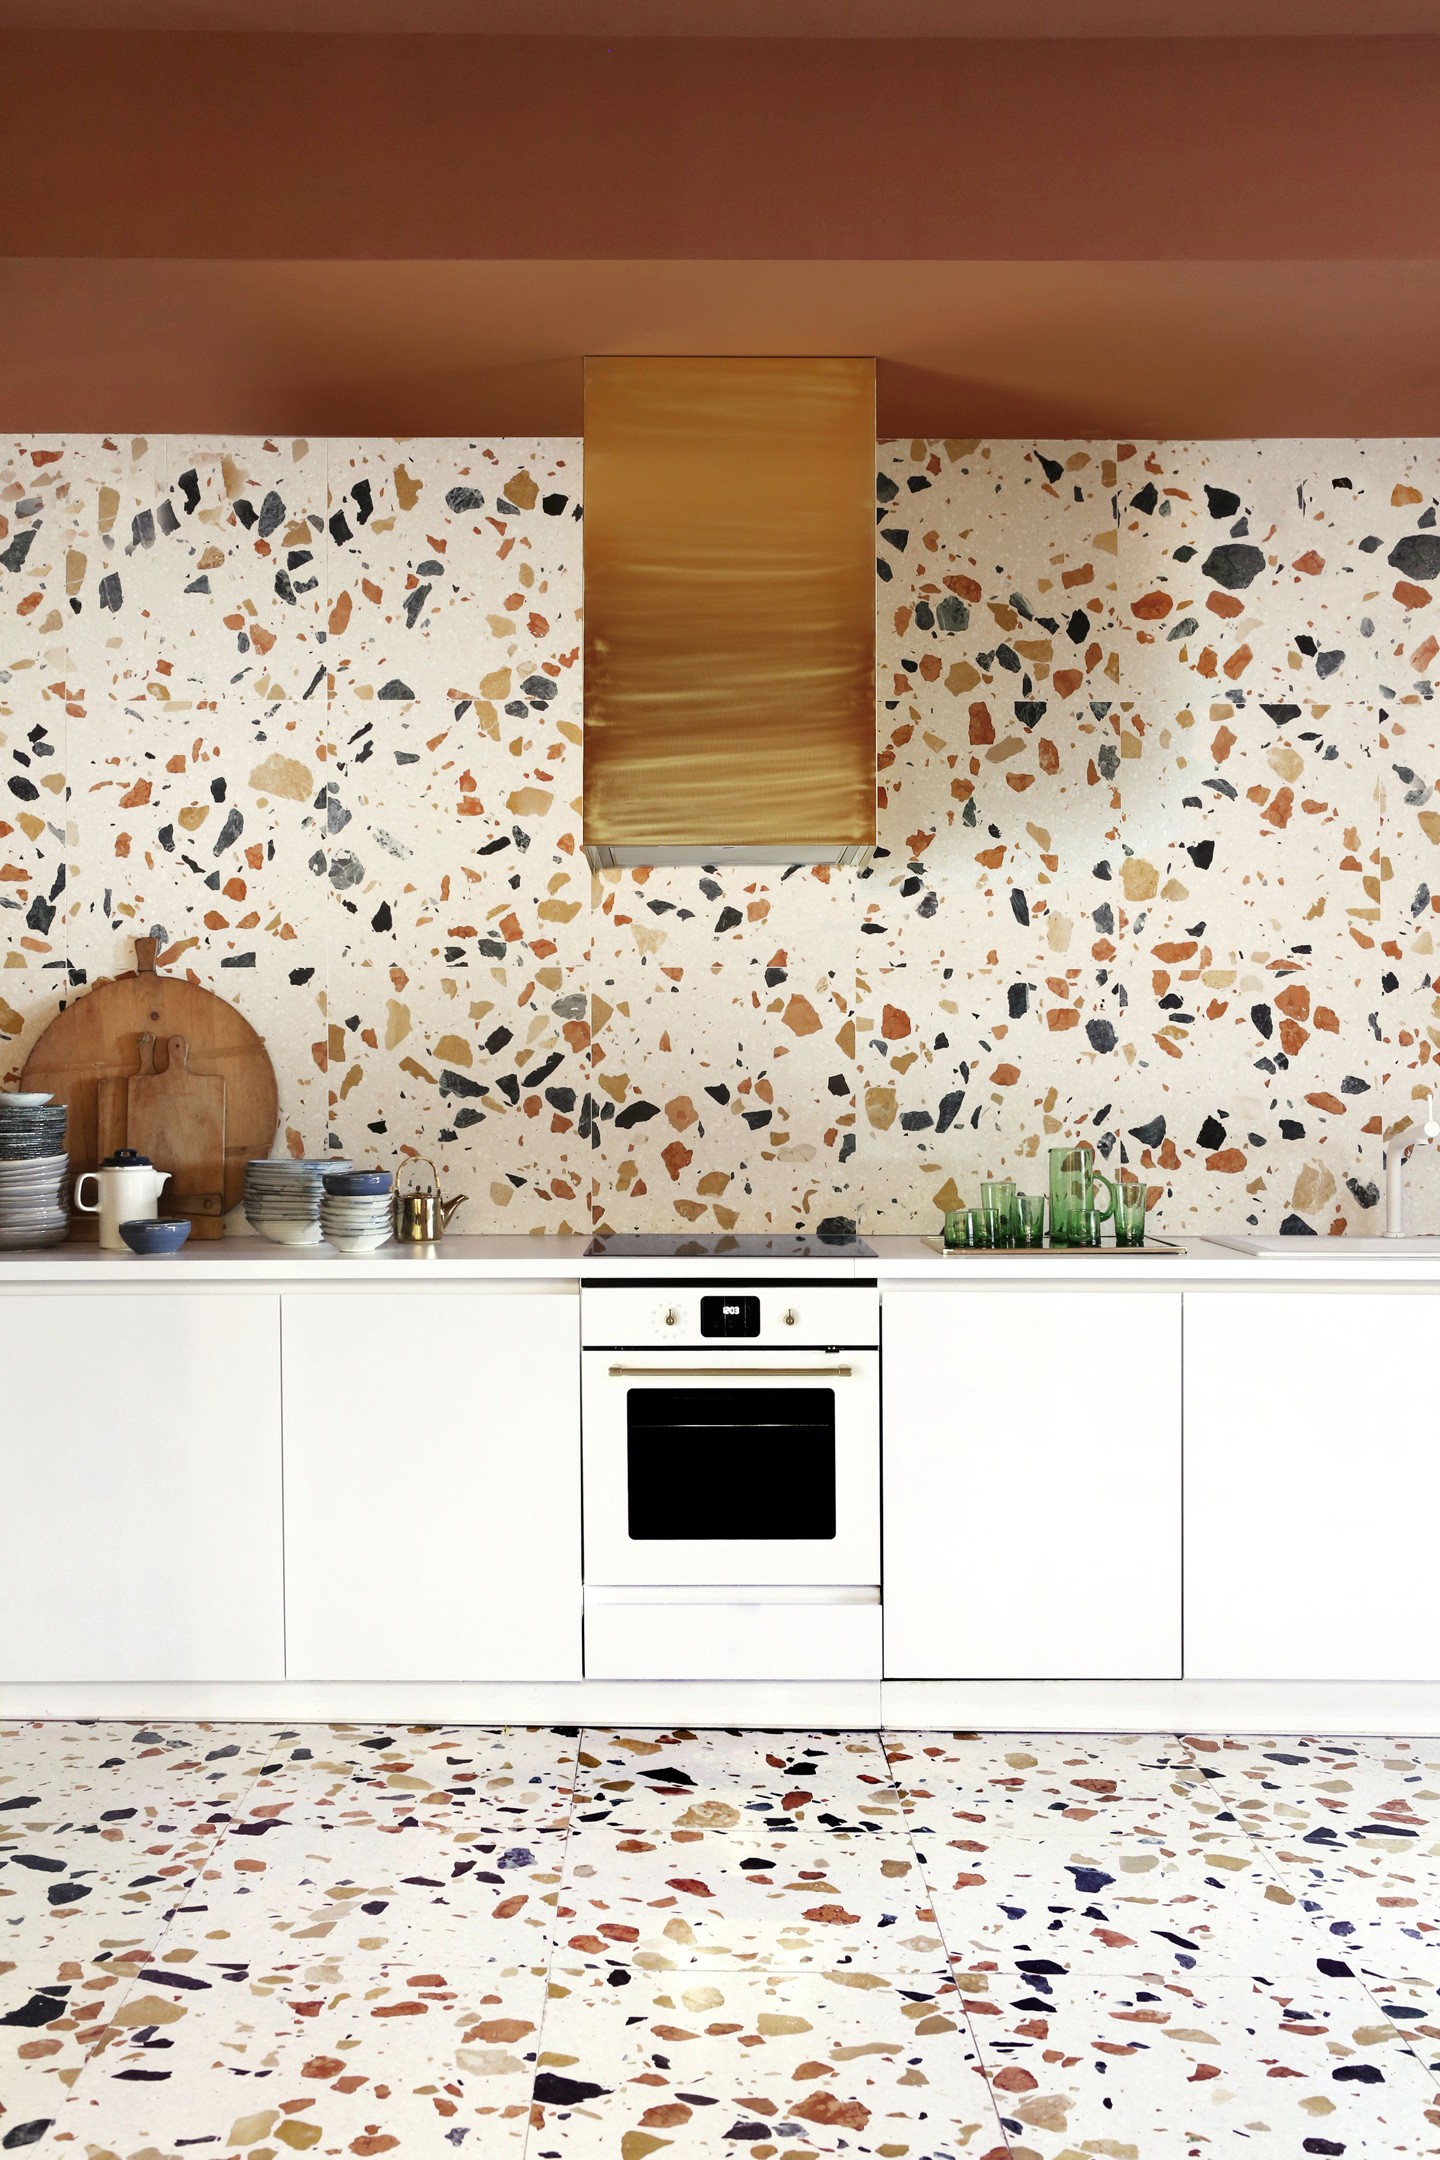 Décor do dia: marmorite preenche paredes e piso na cozinha (Foto: Divulgação)